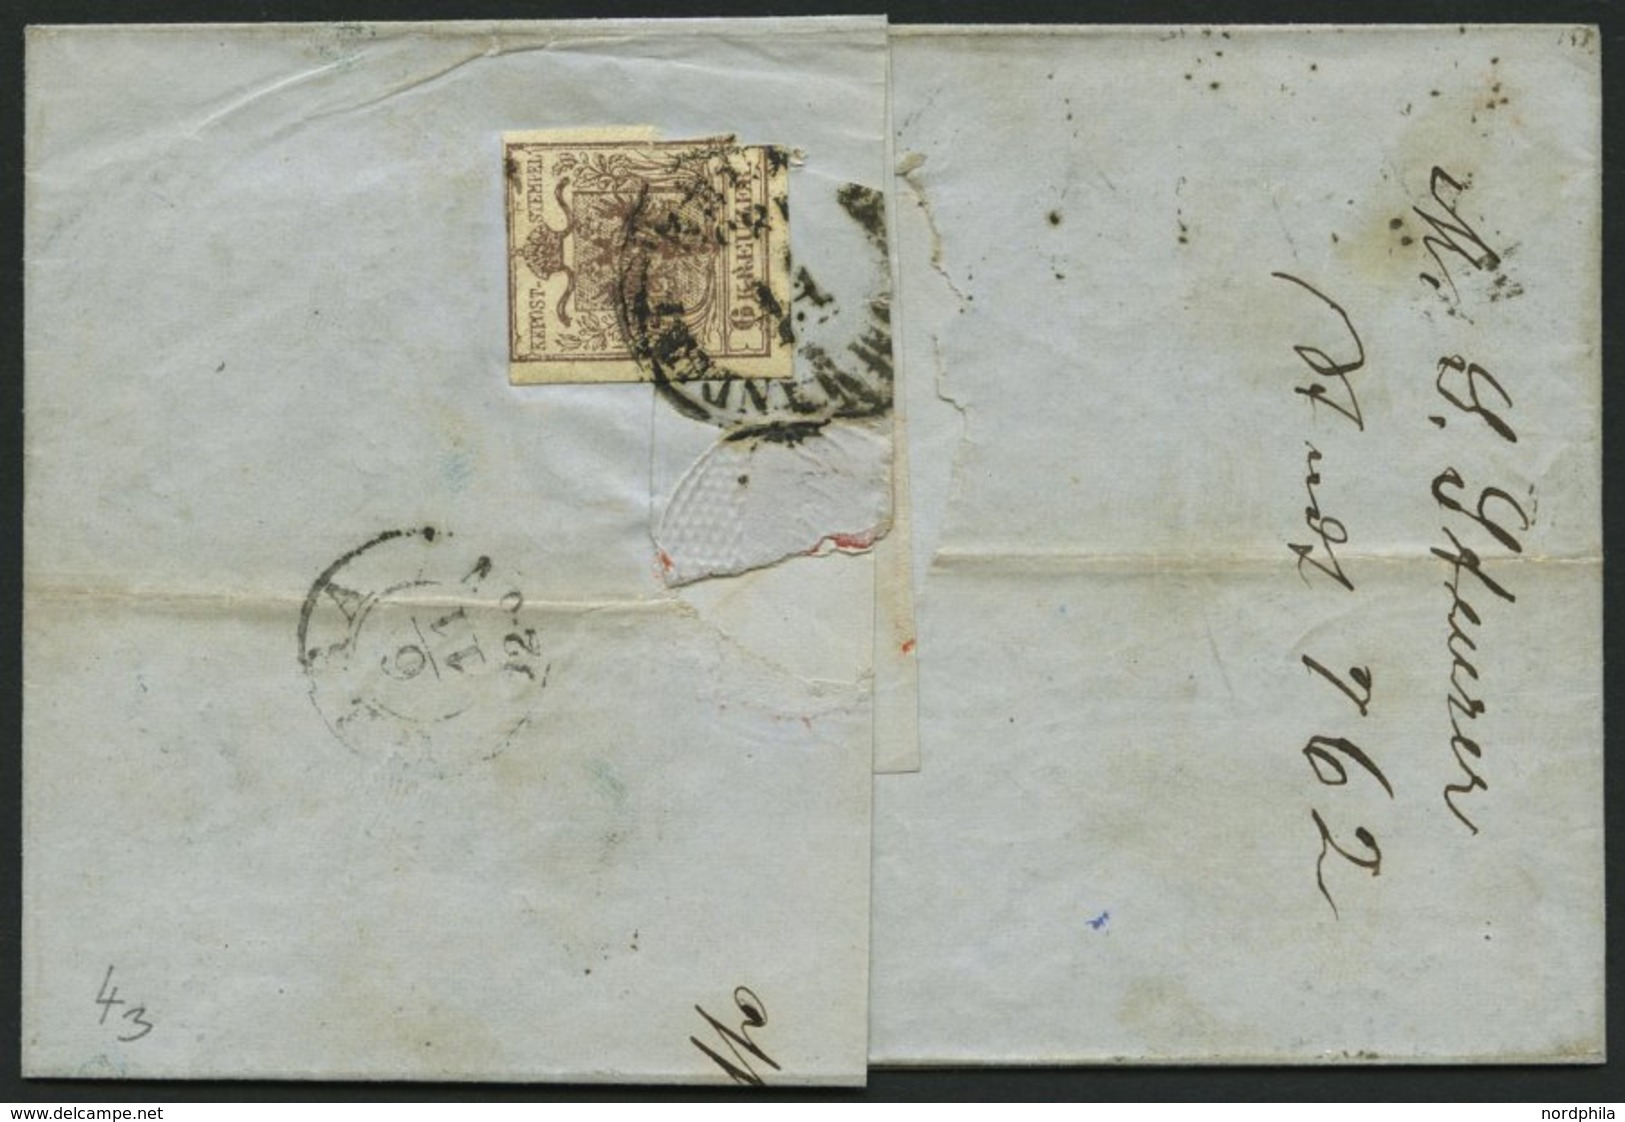 ÖSTERREICH 5Y BRIEF, 1855, 9 Kr. Blau, Maschinenpapier, Type IIIb, K1 RECOMMANDIRT WIEN, Rückseitig Defekte 6 Kr., Prach - Used Stamps